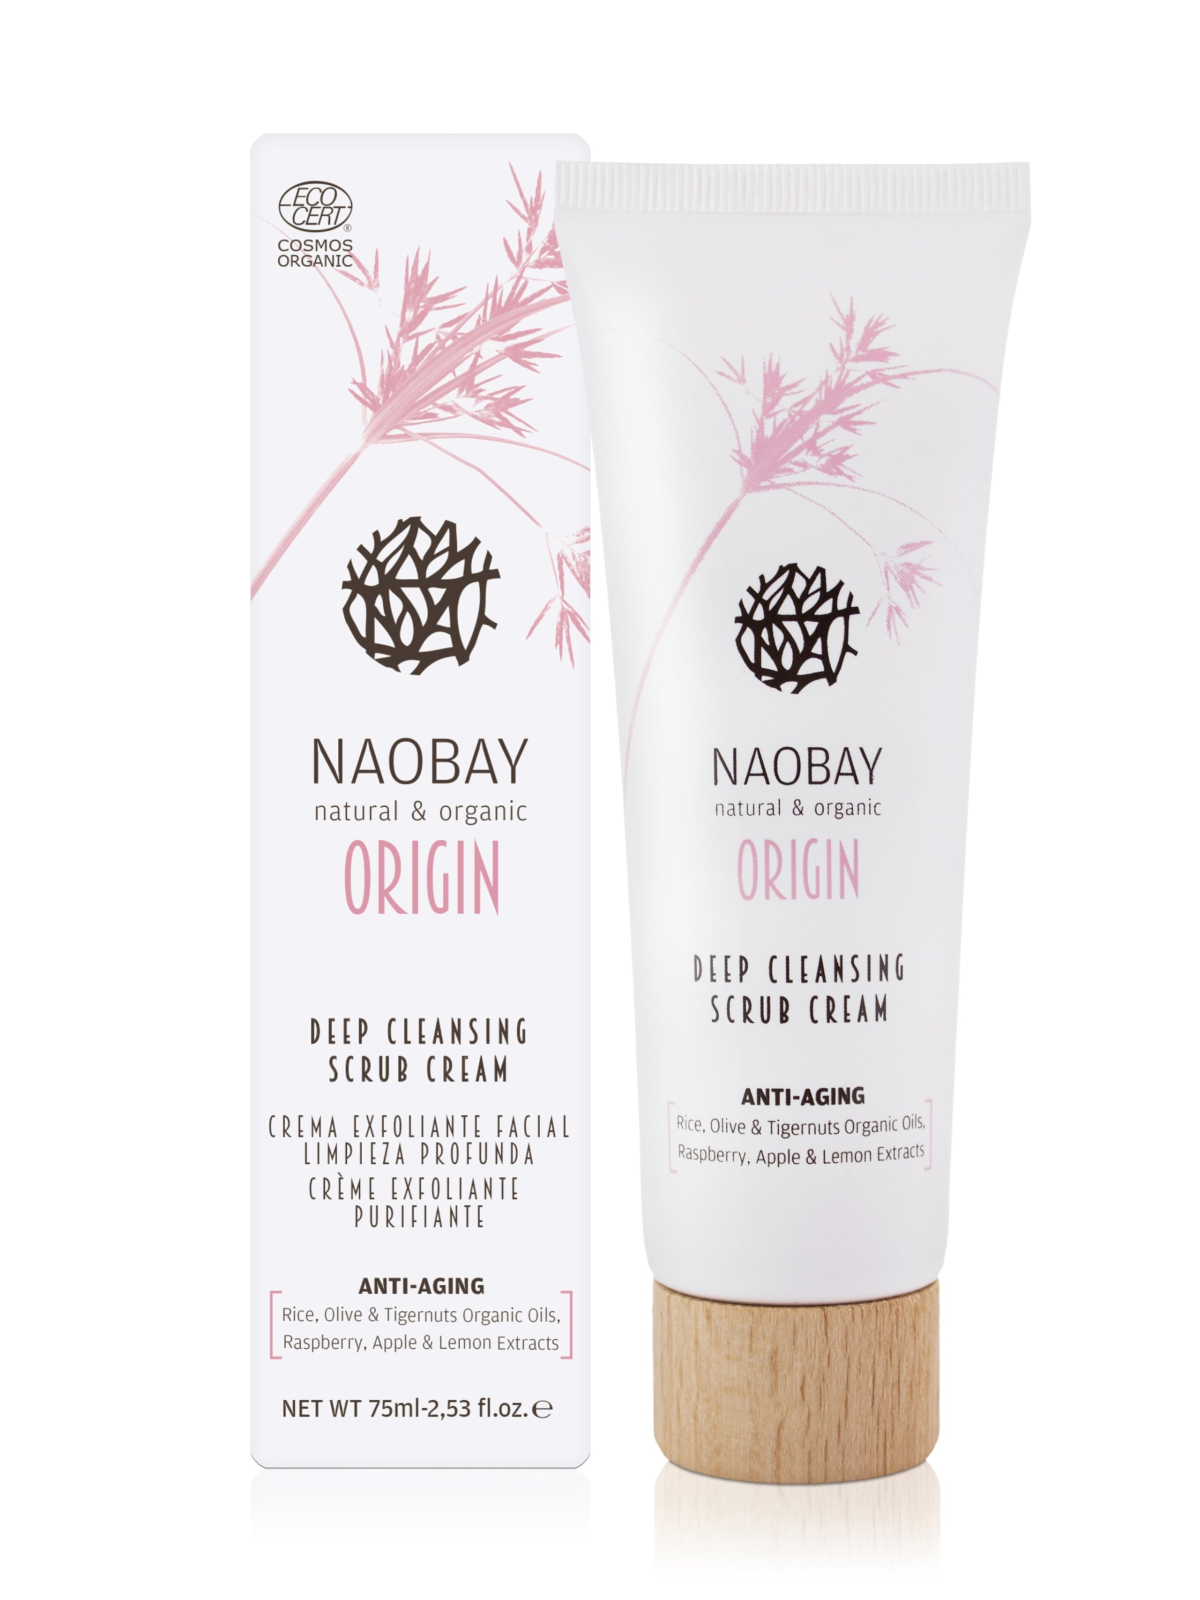 Crema exfoliante facial limpieza profunda Origin Naobay